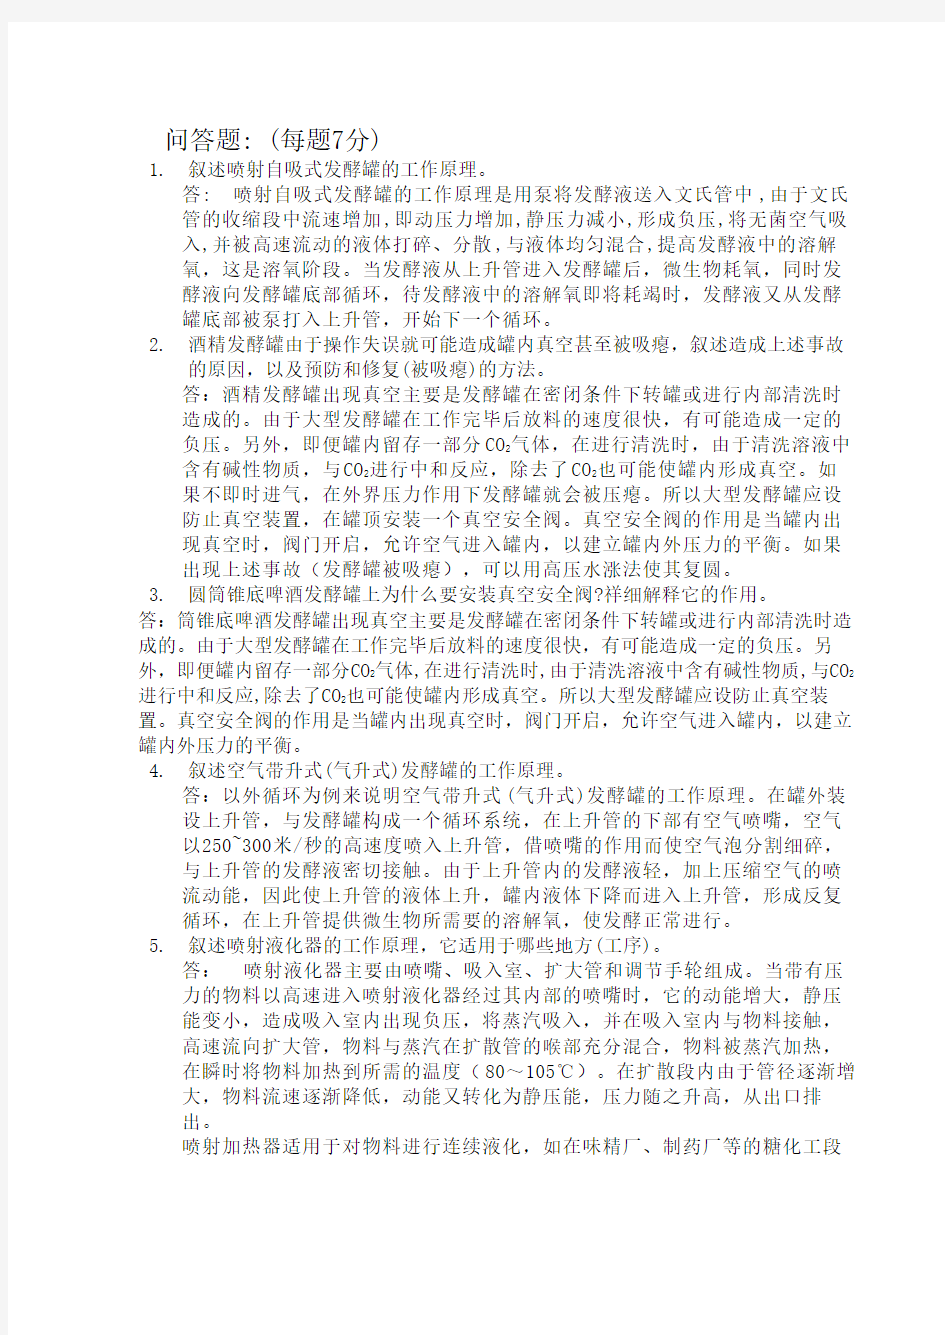 河南工业大学生物工程设备习题集共9页文档